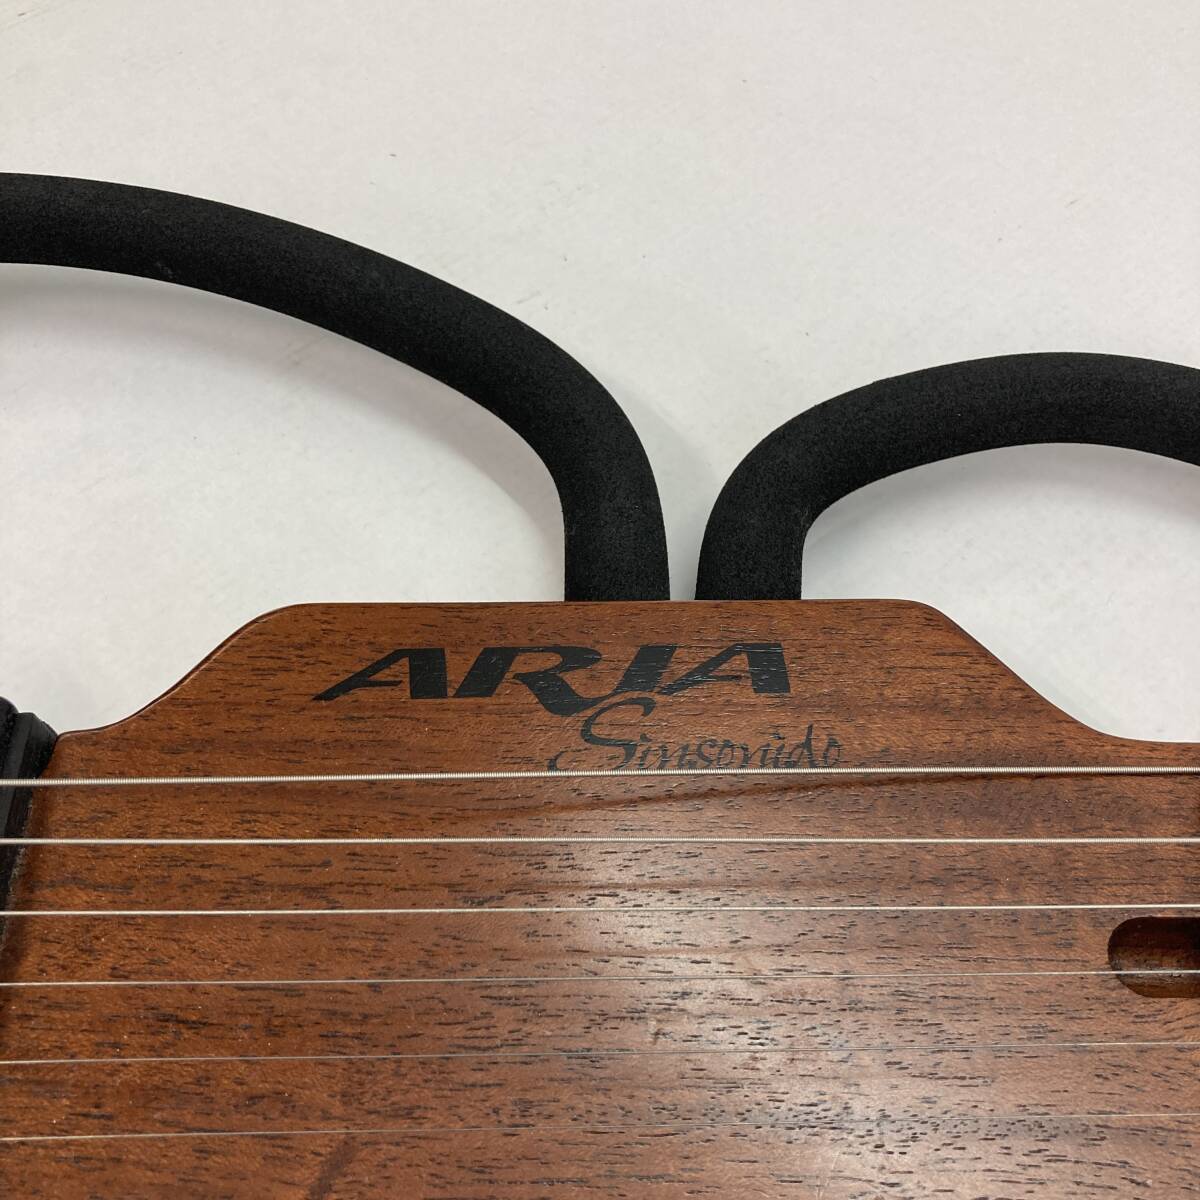 No.5673*1 иен ~[ARIA] Aria Sinsonido немой гитара выход звука подтверждено б/у товар 